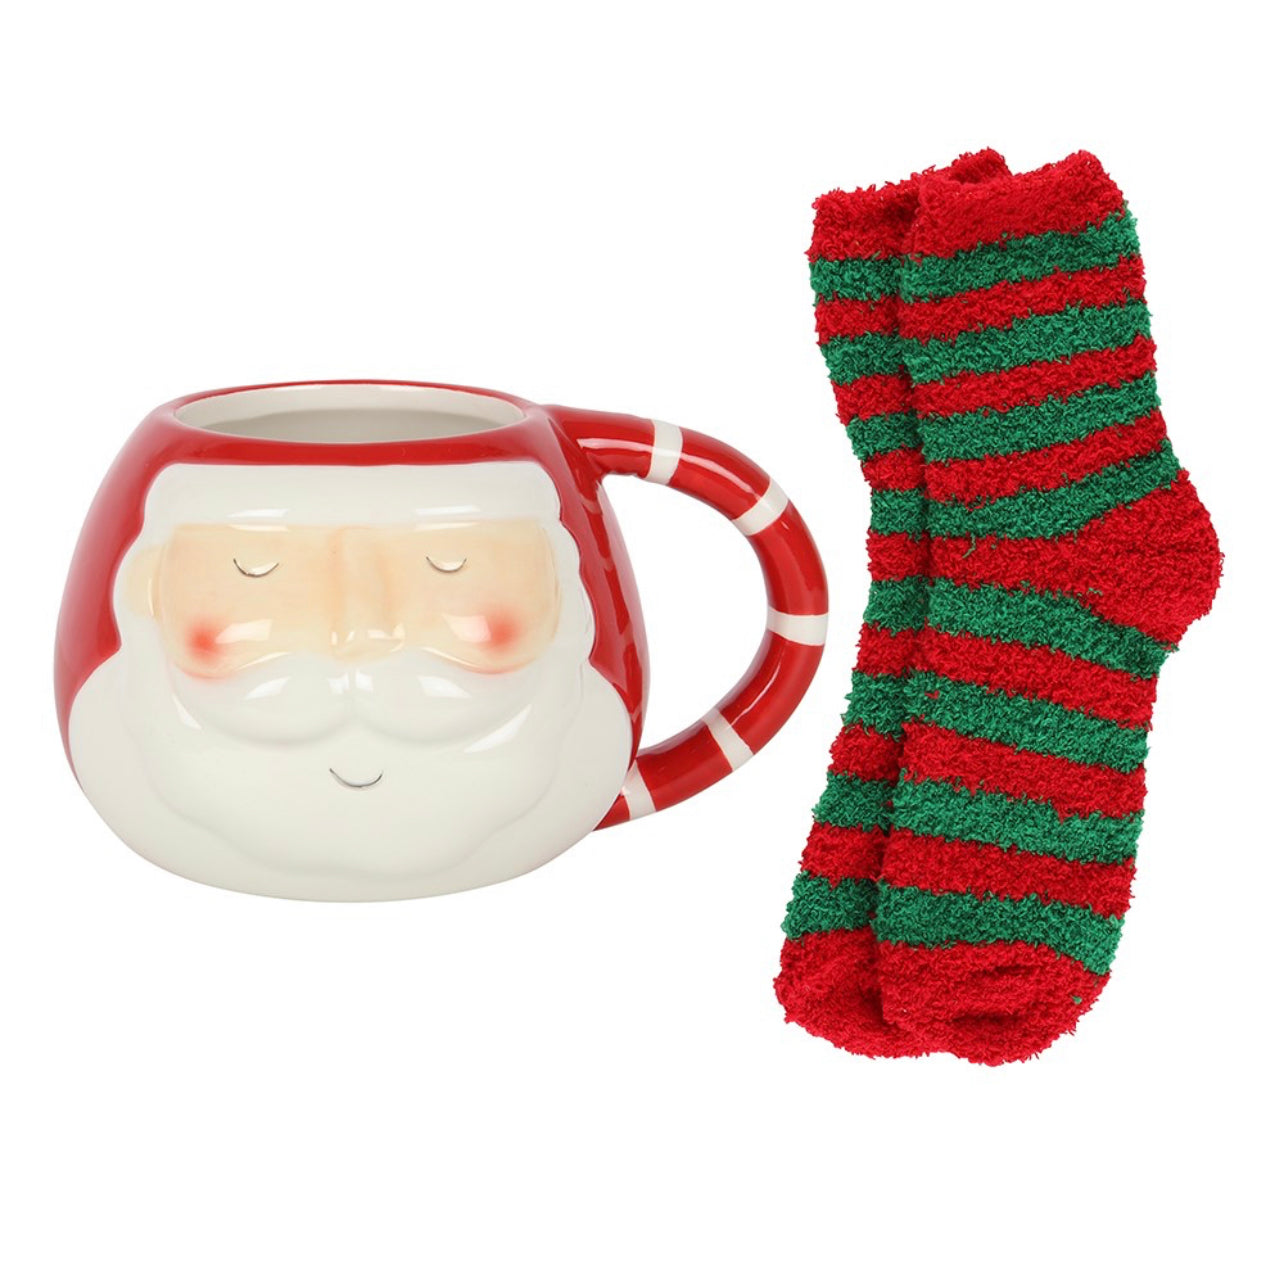 Santa Mug & Socks Set